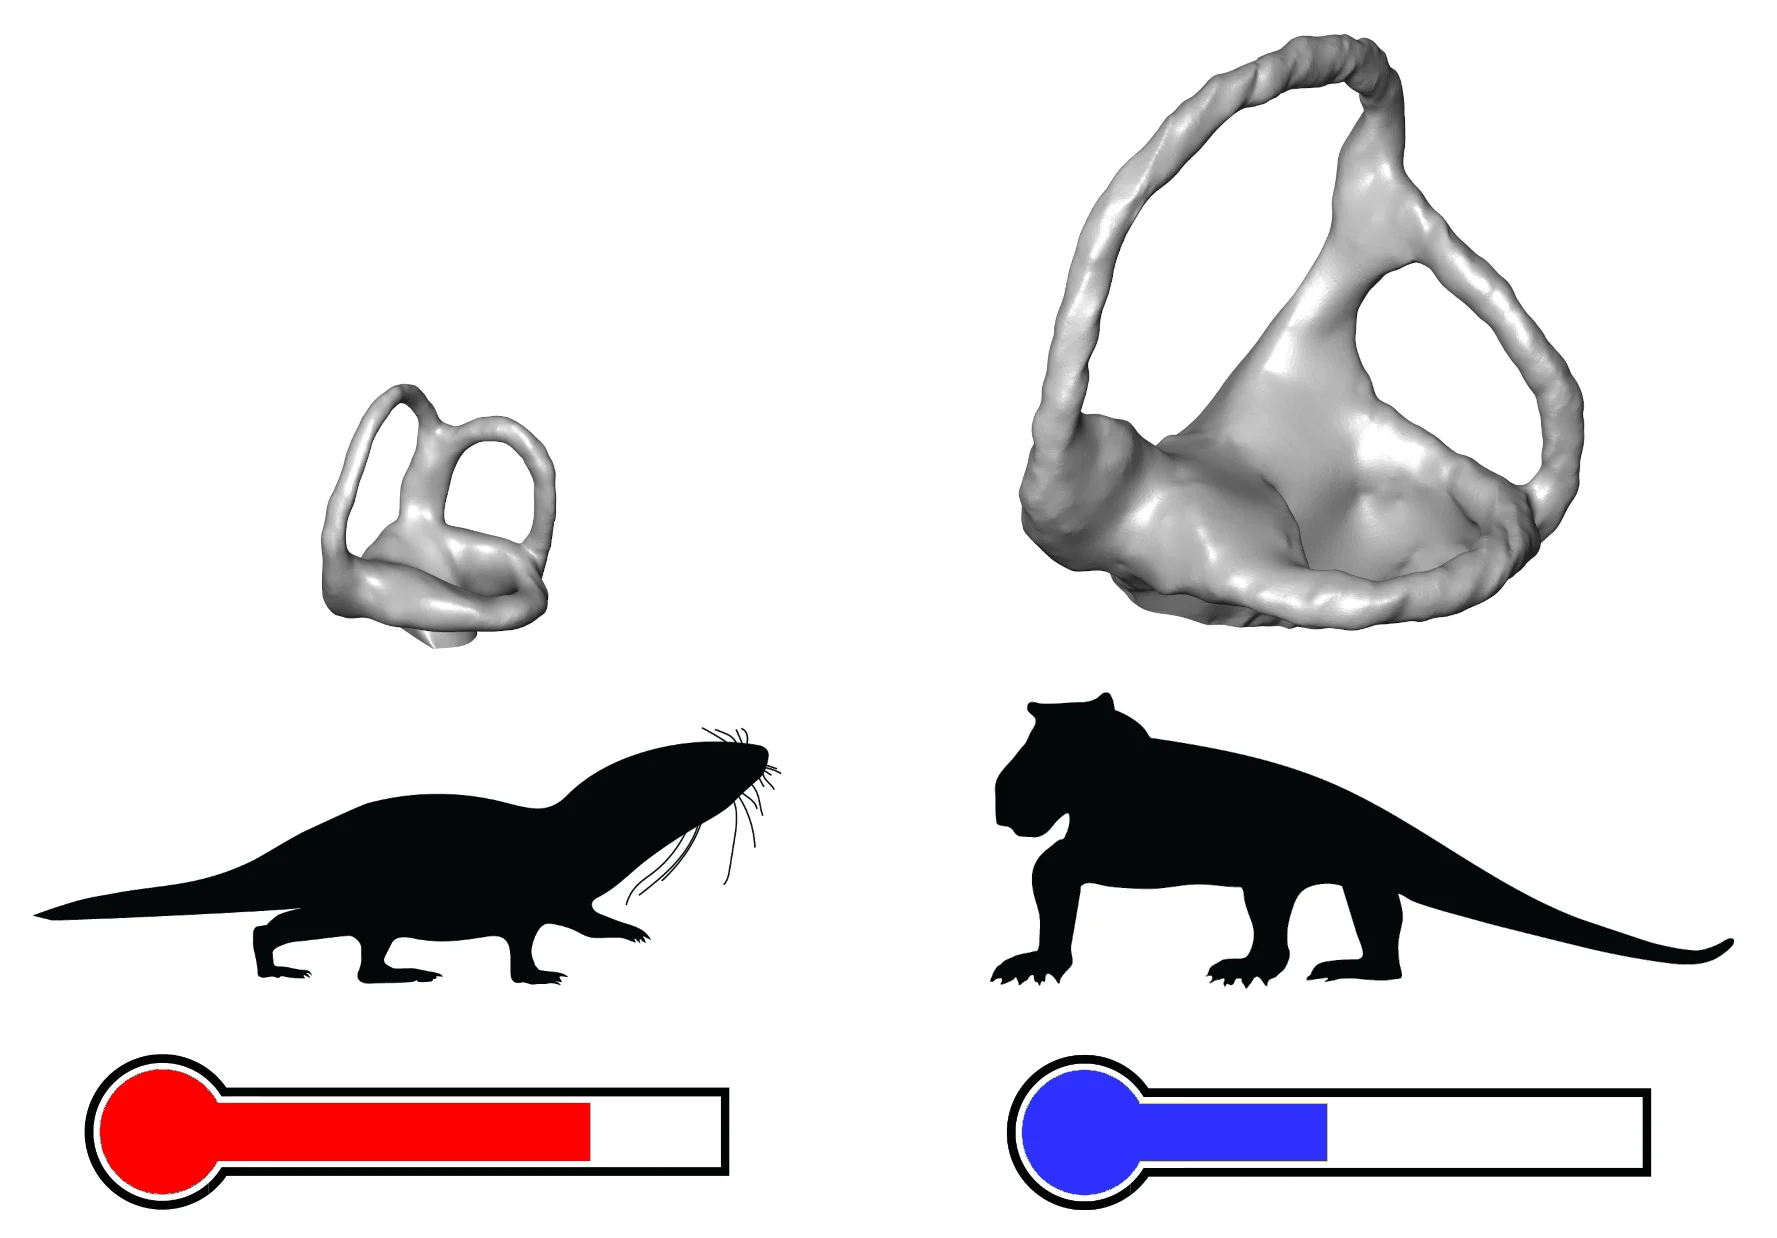 Внутренние слуховые проходы древних теплокровных (слева) и холоднокровных (справа) животных.